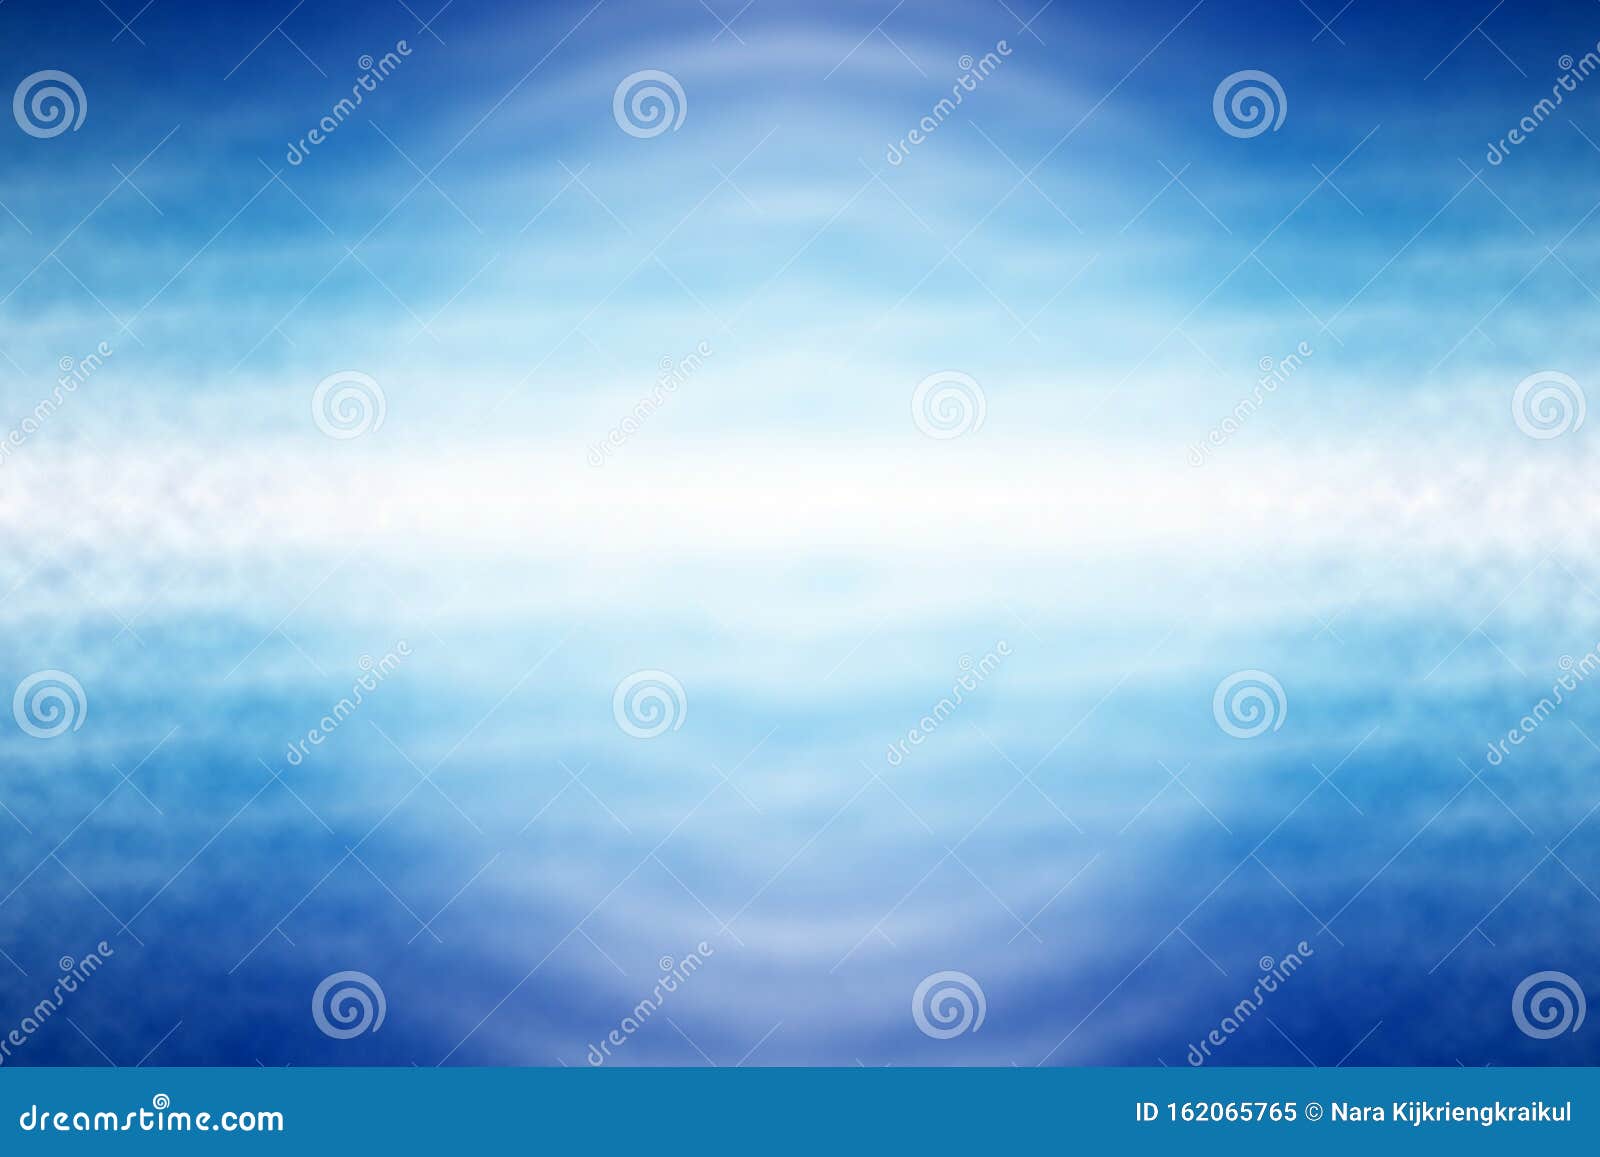 蓝光波海浪壁纸 幻想背景库存例证 插画包括有蓝光波海浪壁纸 幻想背景